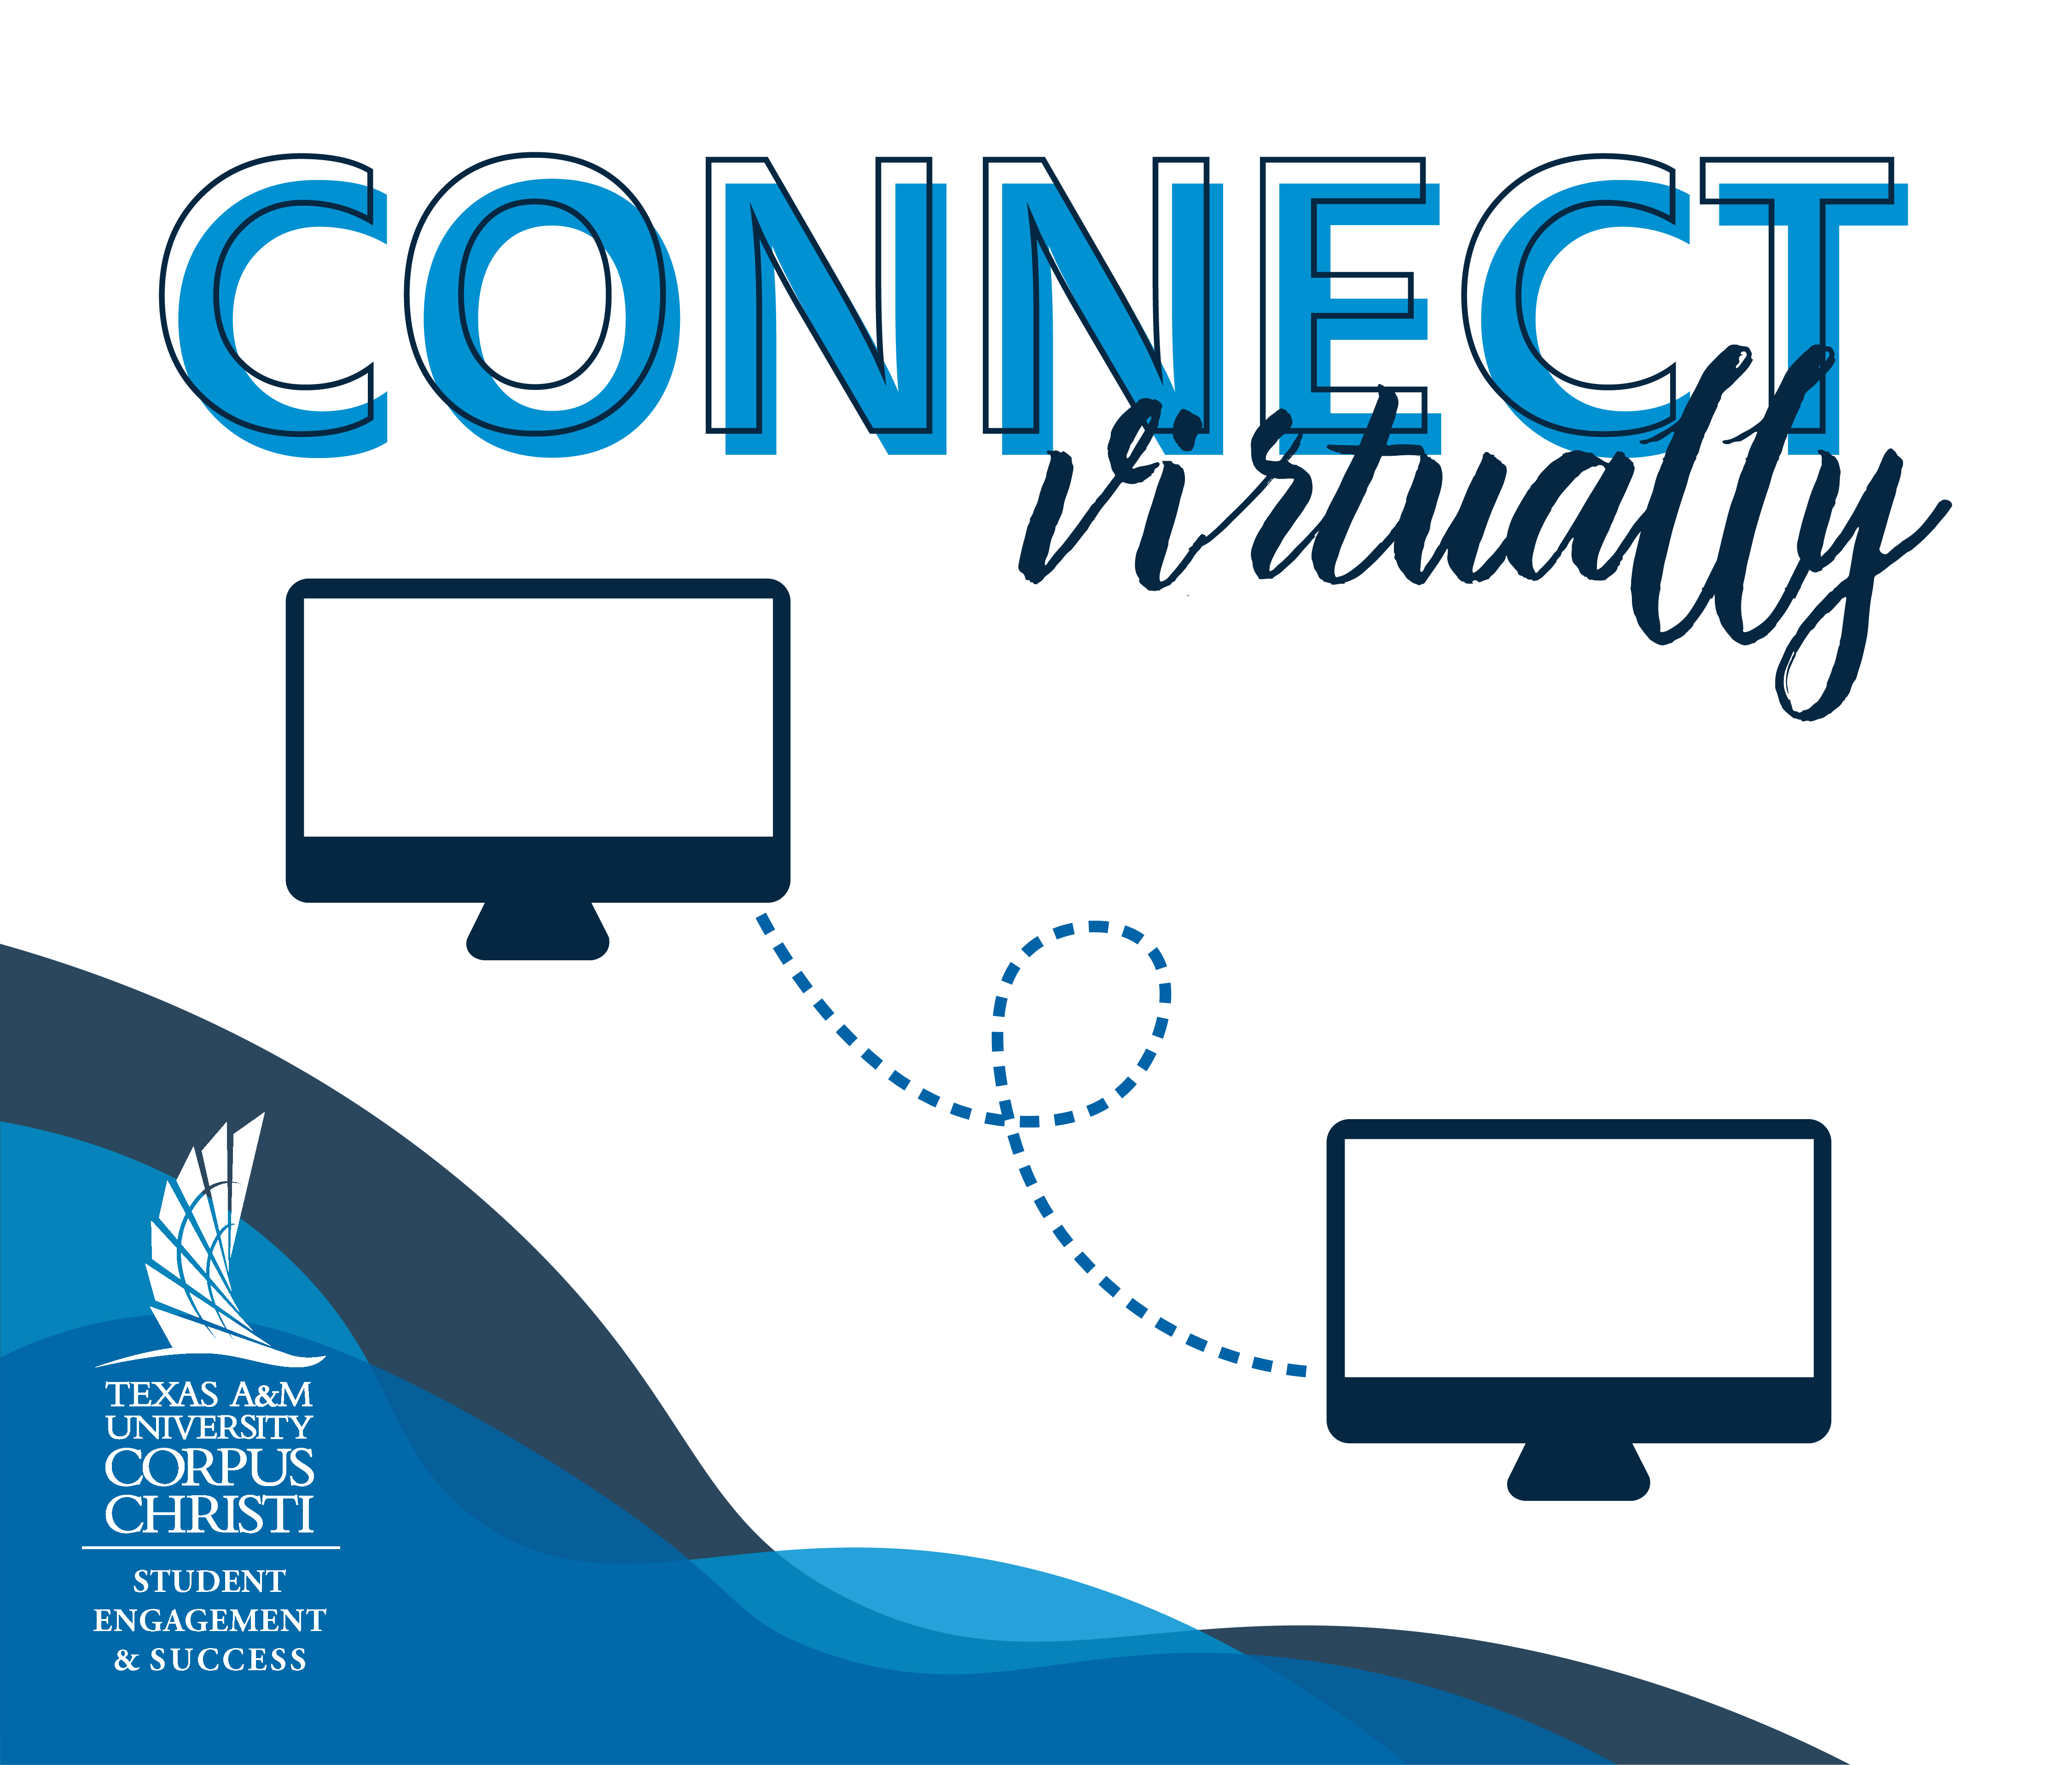 Connect virtually